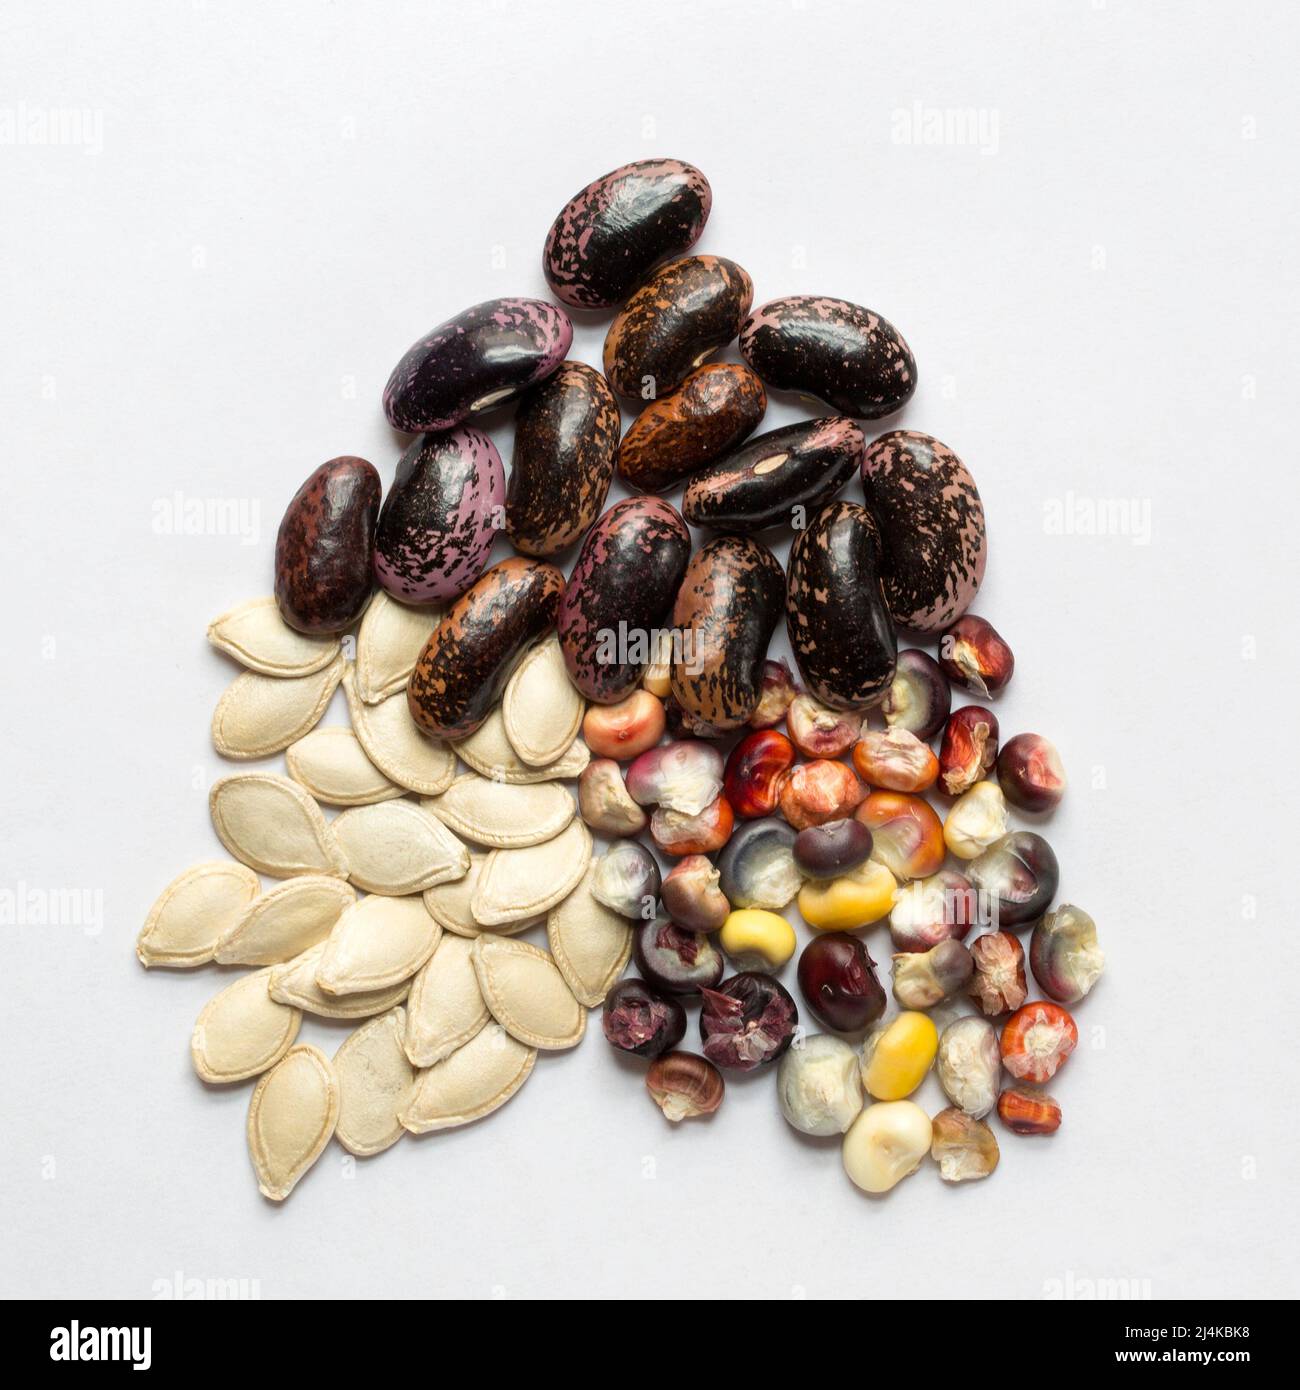 Die Samen der drei Schwestern stammen aus Mesoamerika und sind die drei Hauptkulturen verschiedener indigener Völker Nordamerikas: Kürbis, Mais und Bohnen. Stockfoto